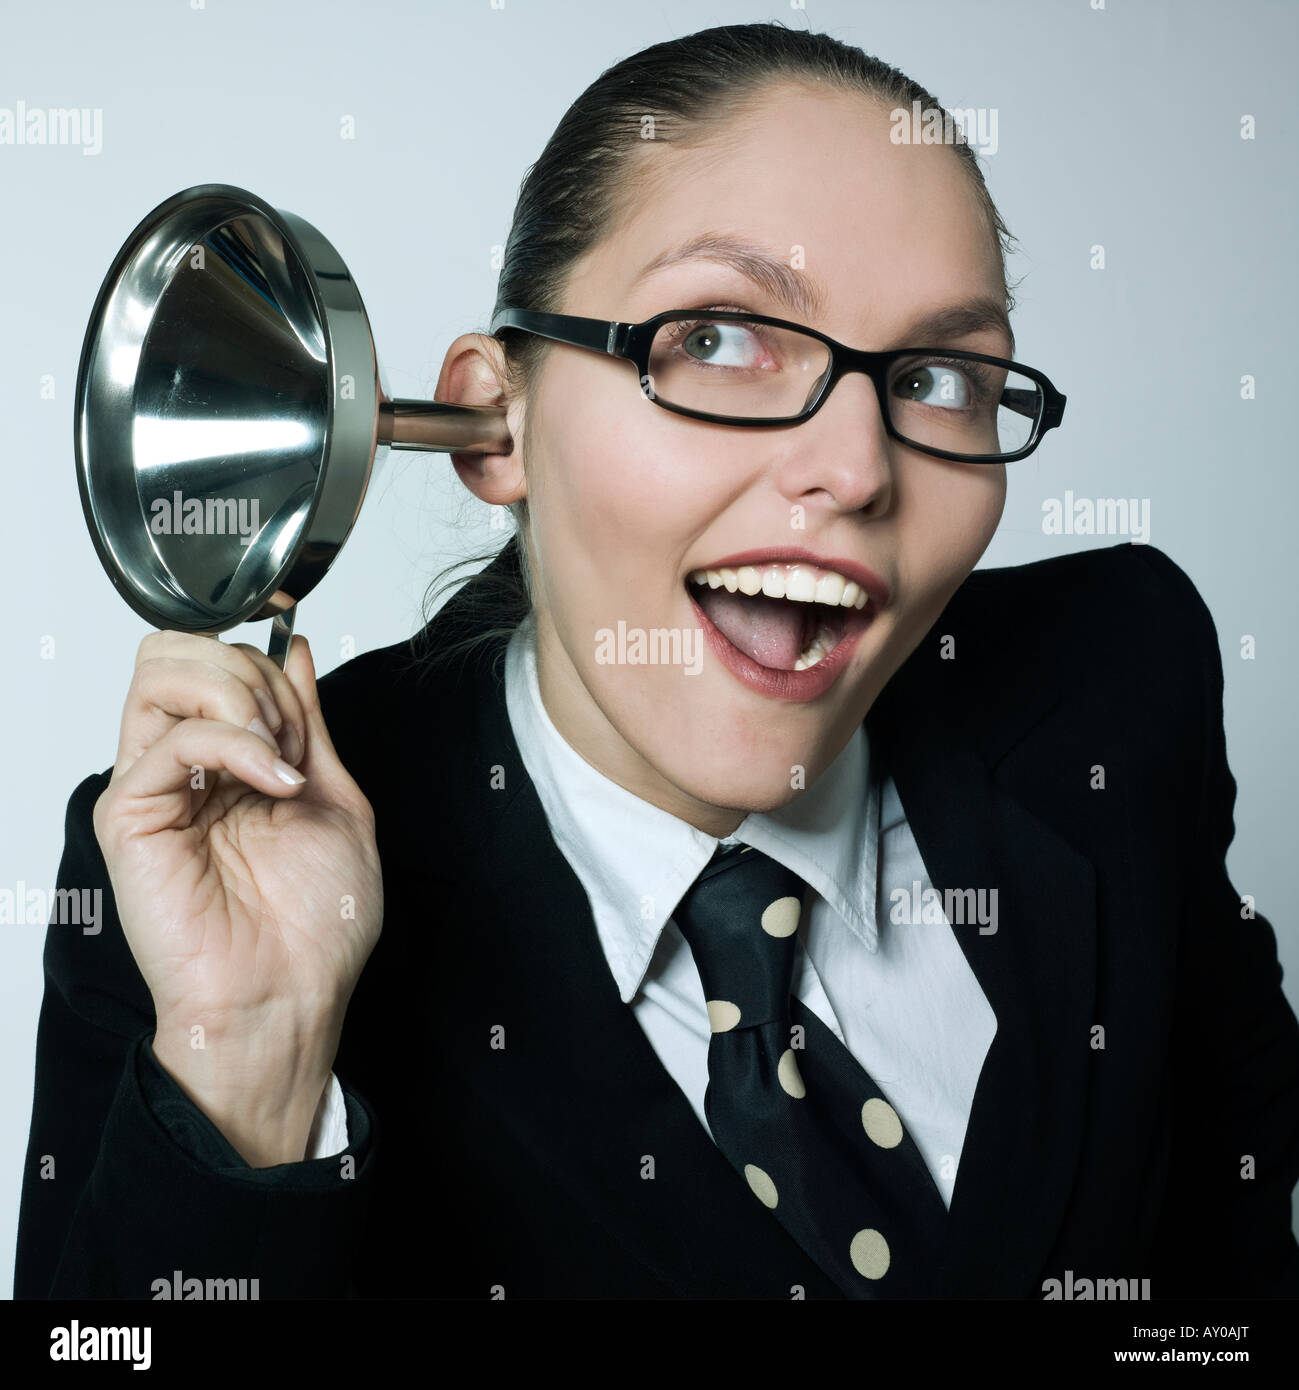 Studioportrait erschossen eine schöne neugierig Business-Frau in ein Kostüm Anzug Hörgerät Trichter neugierig Spionage Klatsch Stockfoto